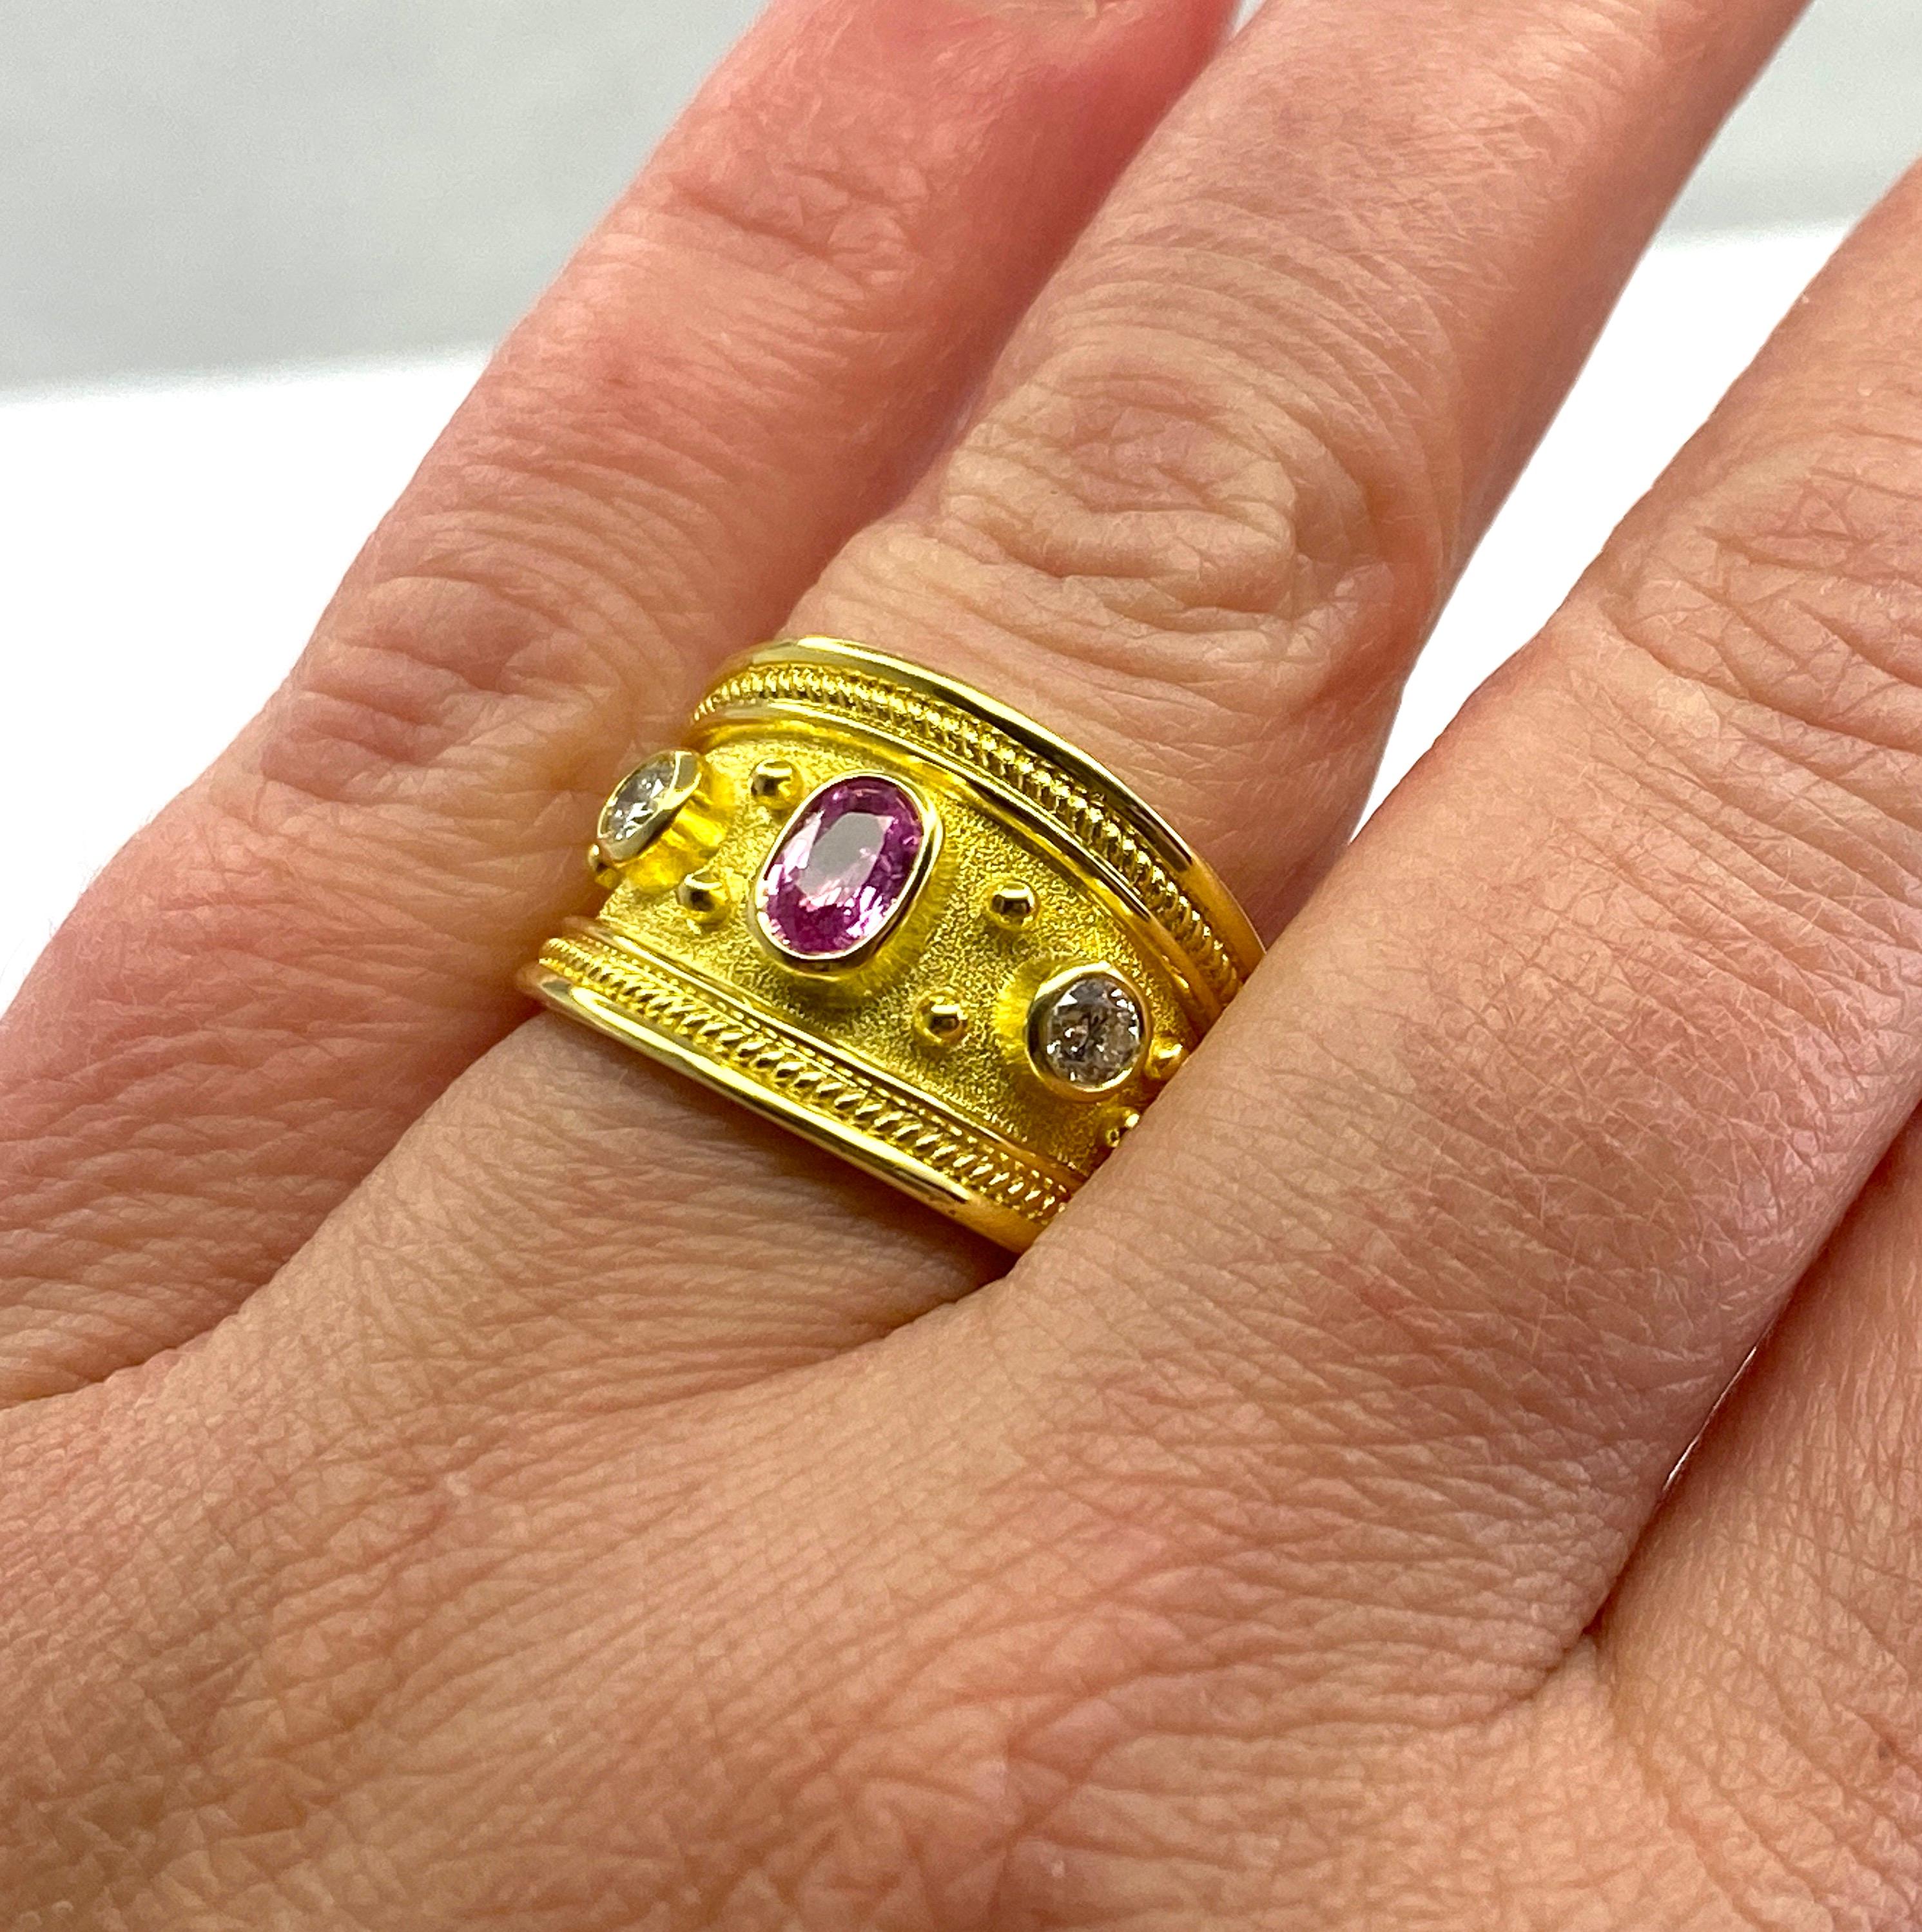 S.Georgios Designerring mit Graduierung, handgefertigt aus massivem 18 Karat Gelbgold. Der Ring ist mikroskopisch genau mit Perlen aus 18 Karat Gelbgold und gedrehten Drähten vor einem Hintergrund aus byzantinischem Samt verziert. Der Ring ist mit